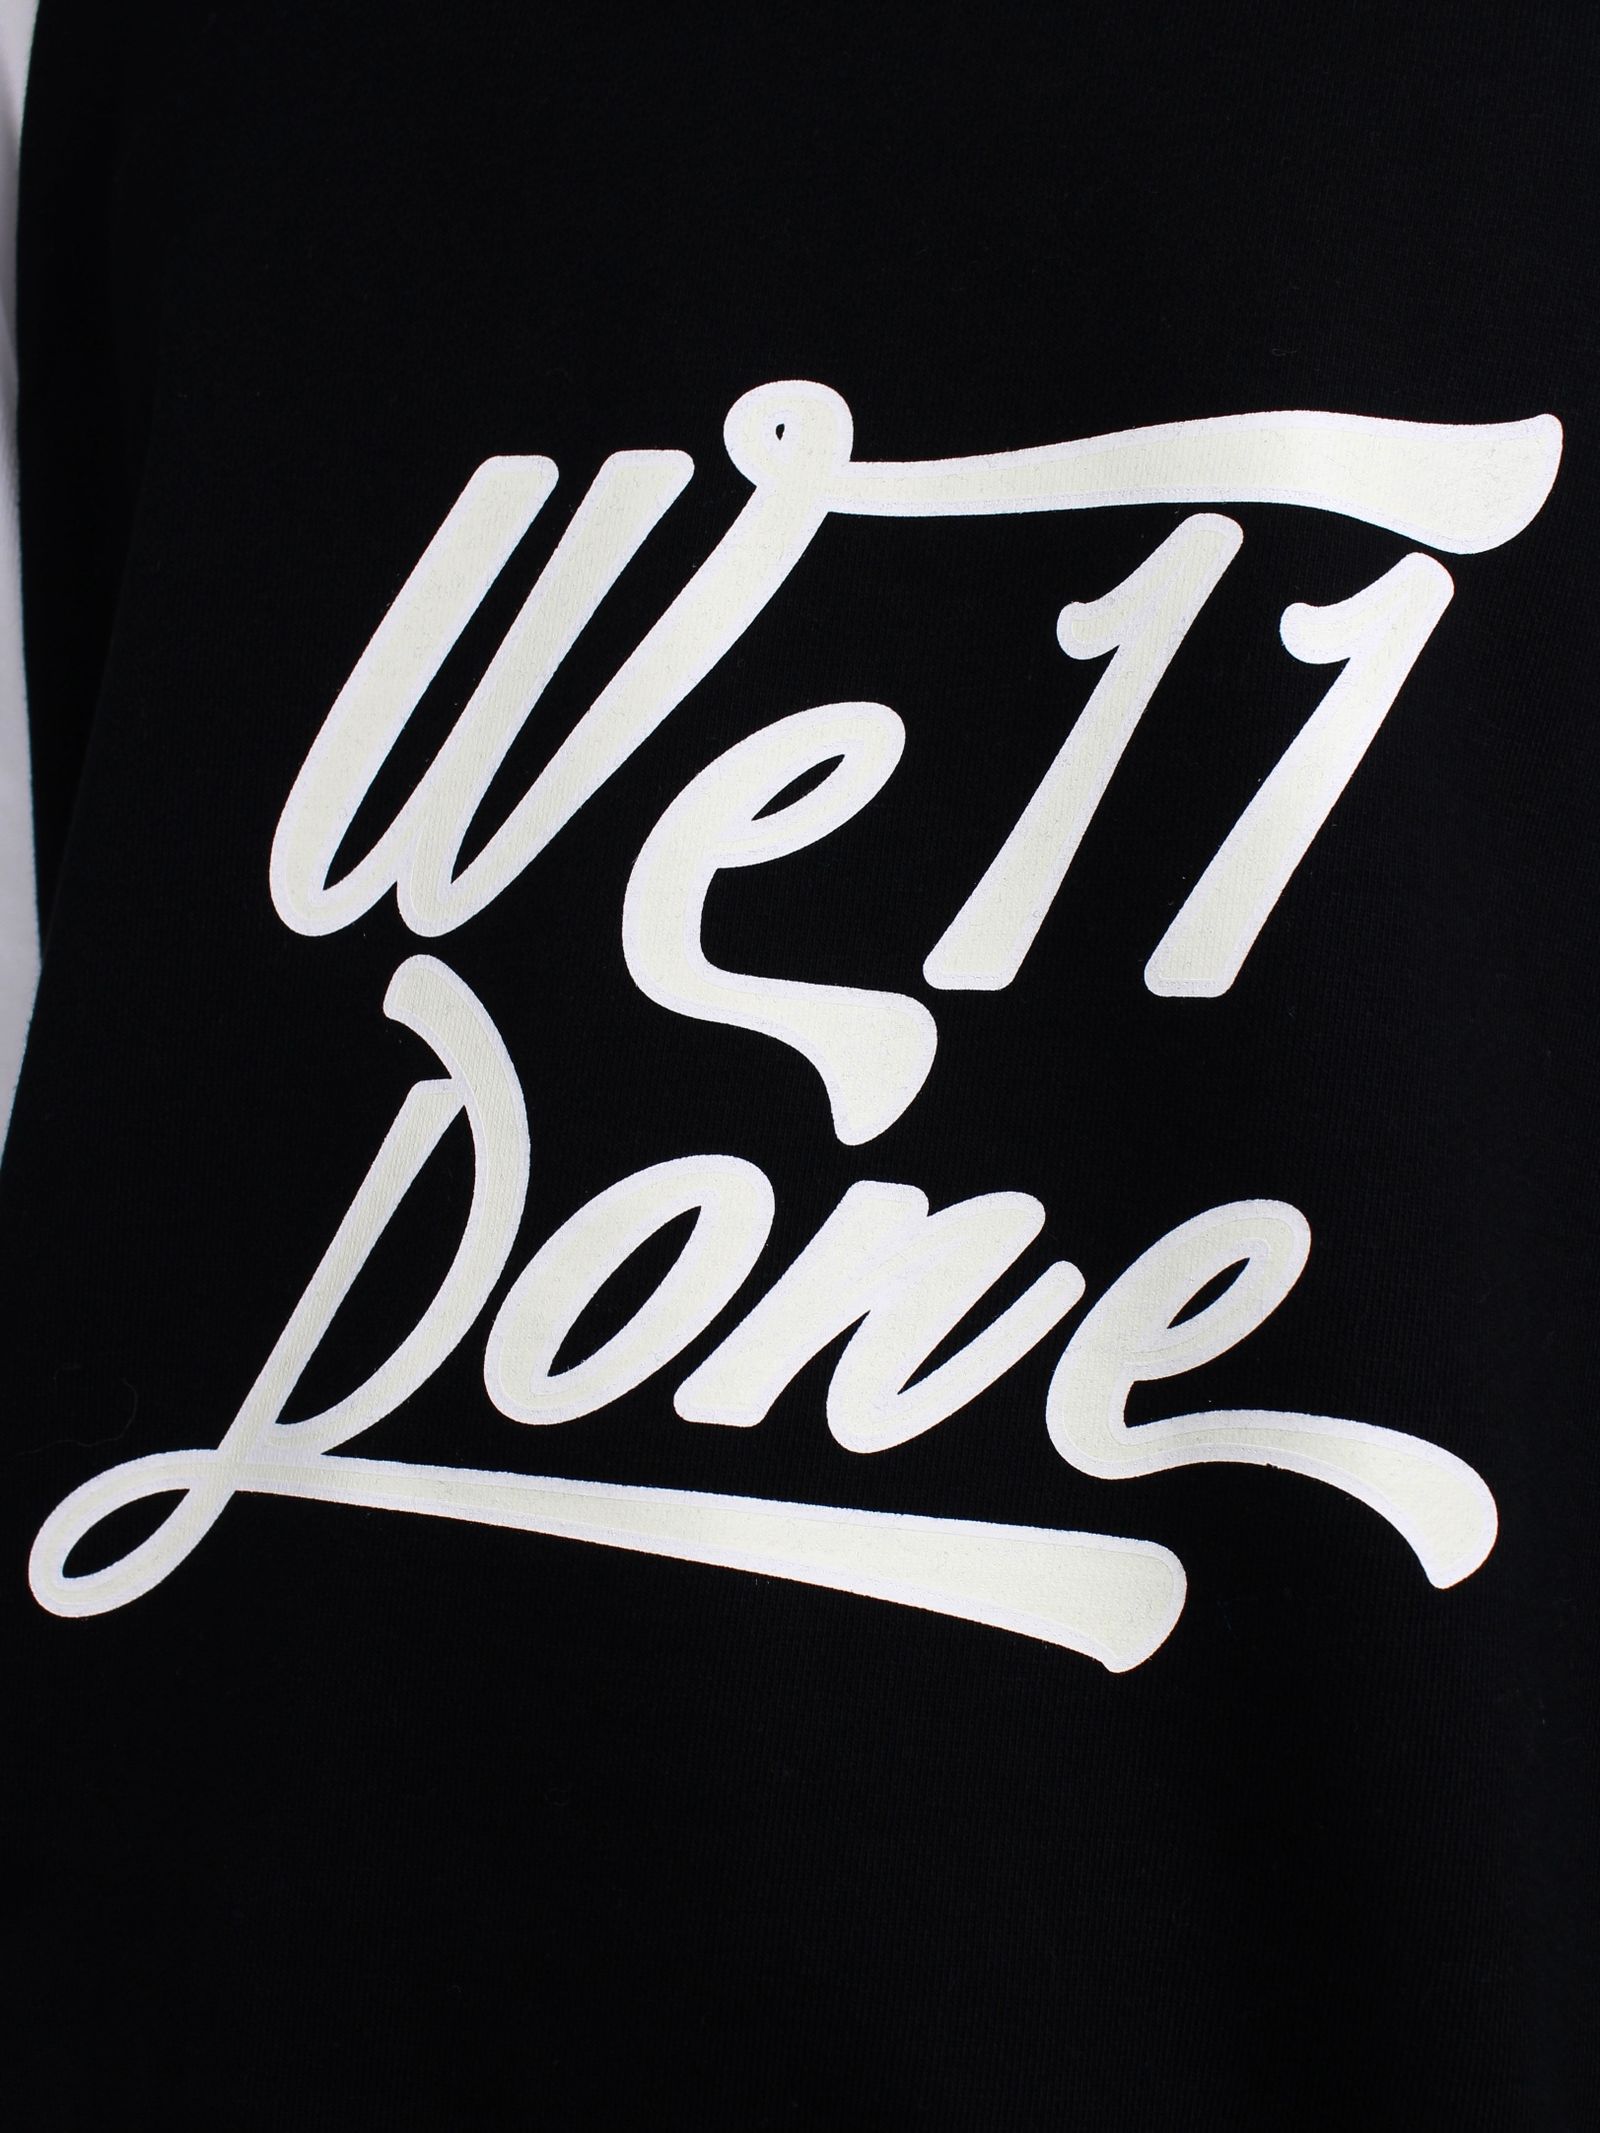 WE11DONE - 【22AW】コラージュロゴ スウェットシャツ / COLLAGE LOGO ...